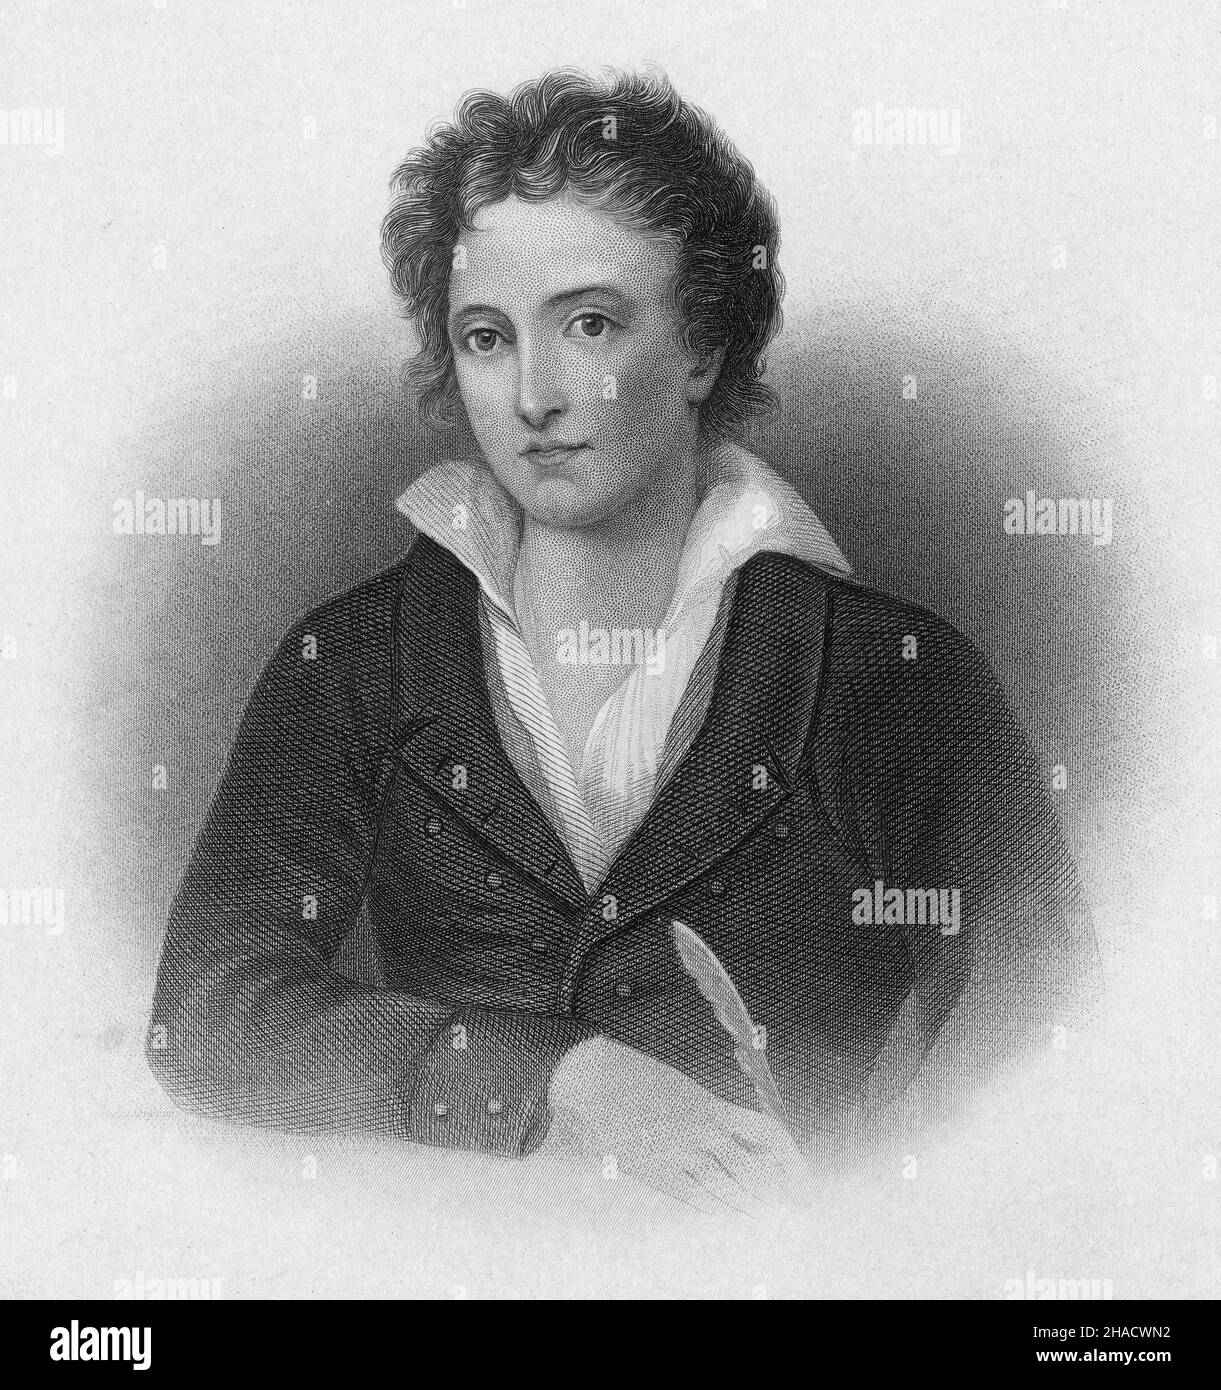 Incisione antica del 1870 di Percy Bysshe Shelley di Henry Bryan Hall (New York). Percy Bysshe Shelley (1792-1822) è stato uno dei maggiori poeti romantici inglesi. FONTE: INCISIONE ORIGINALE Foto Stock